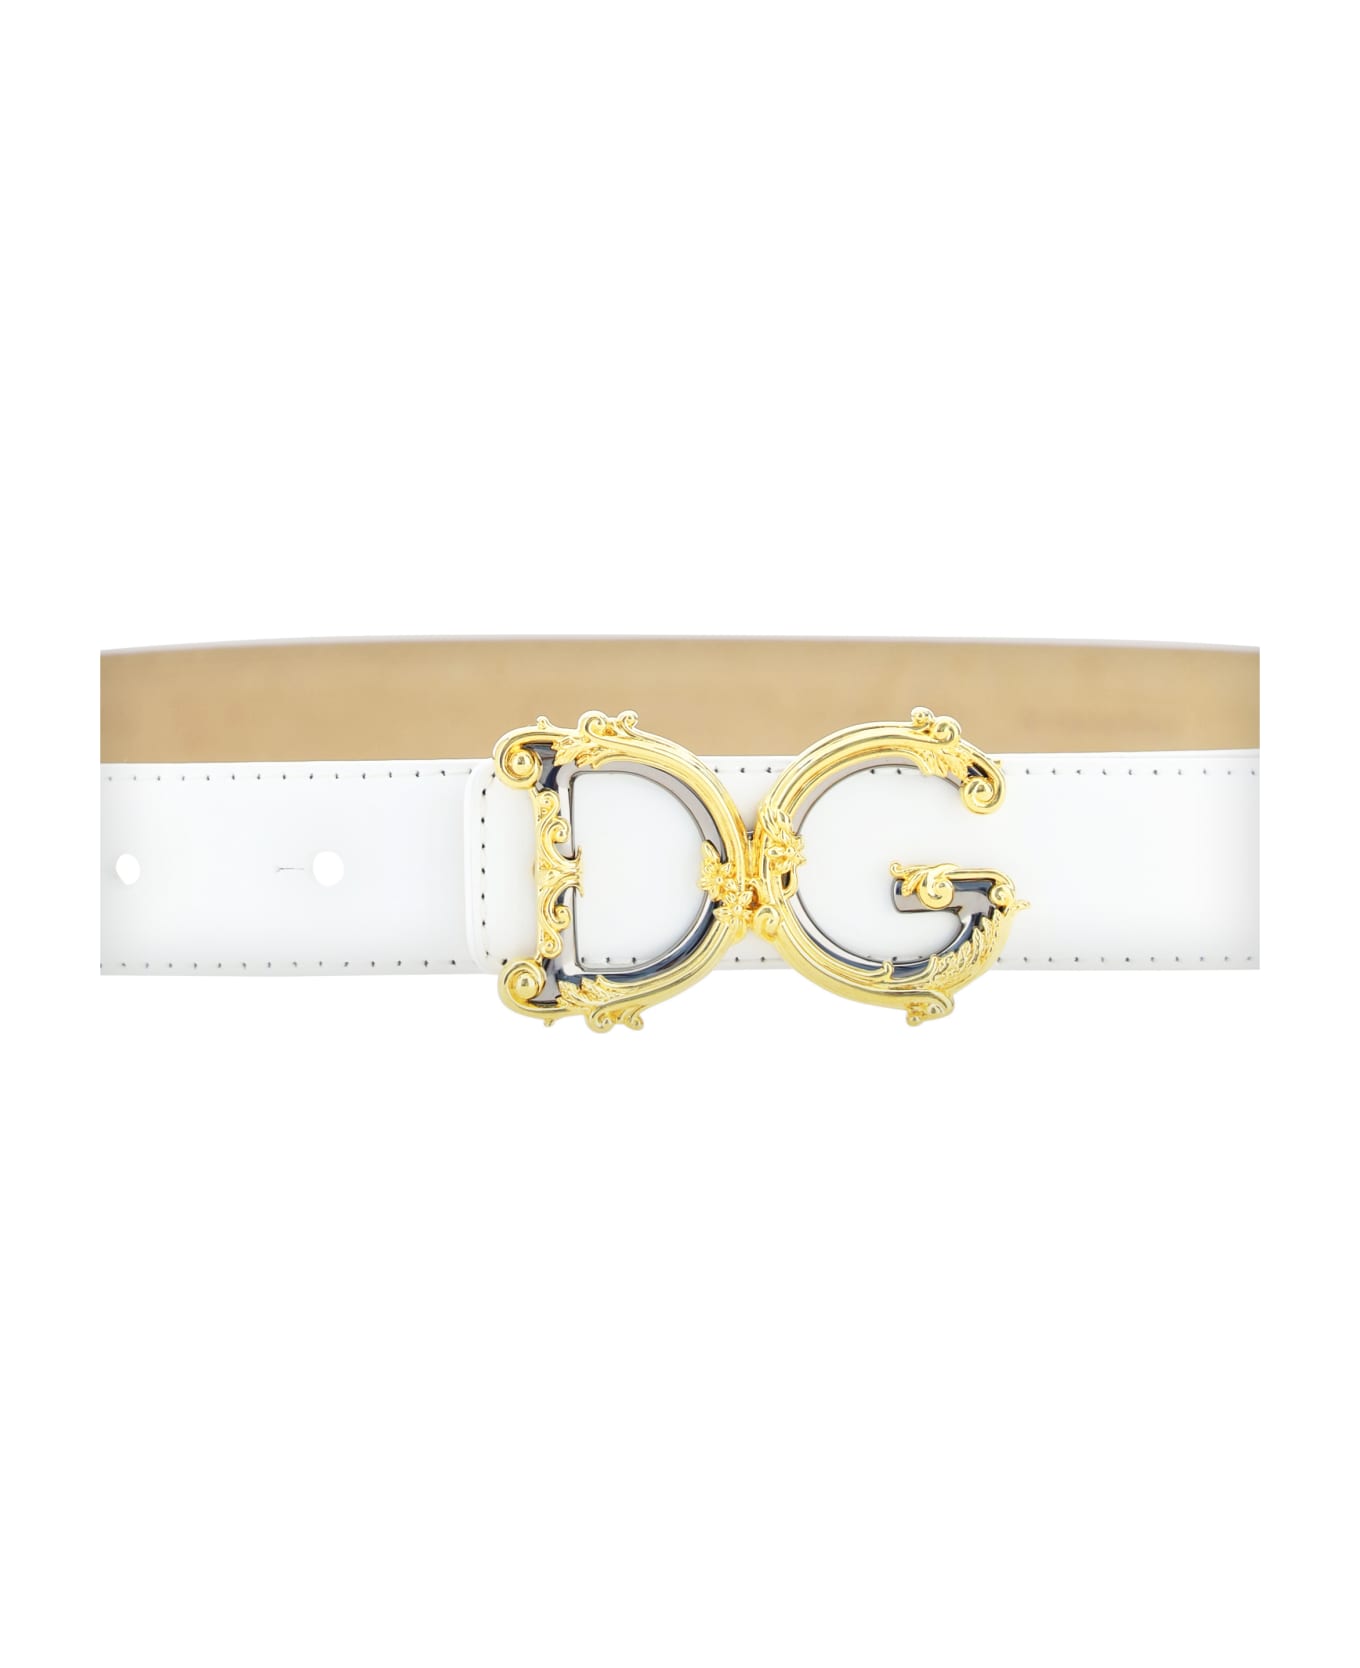 Dolce & Gabbana Leather Logo Belt - Bianco ベルト